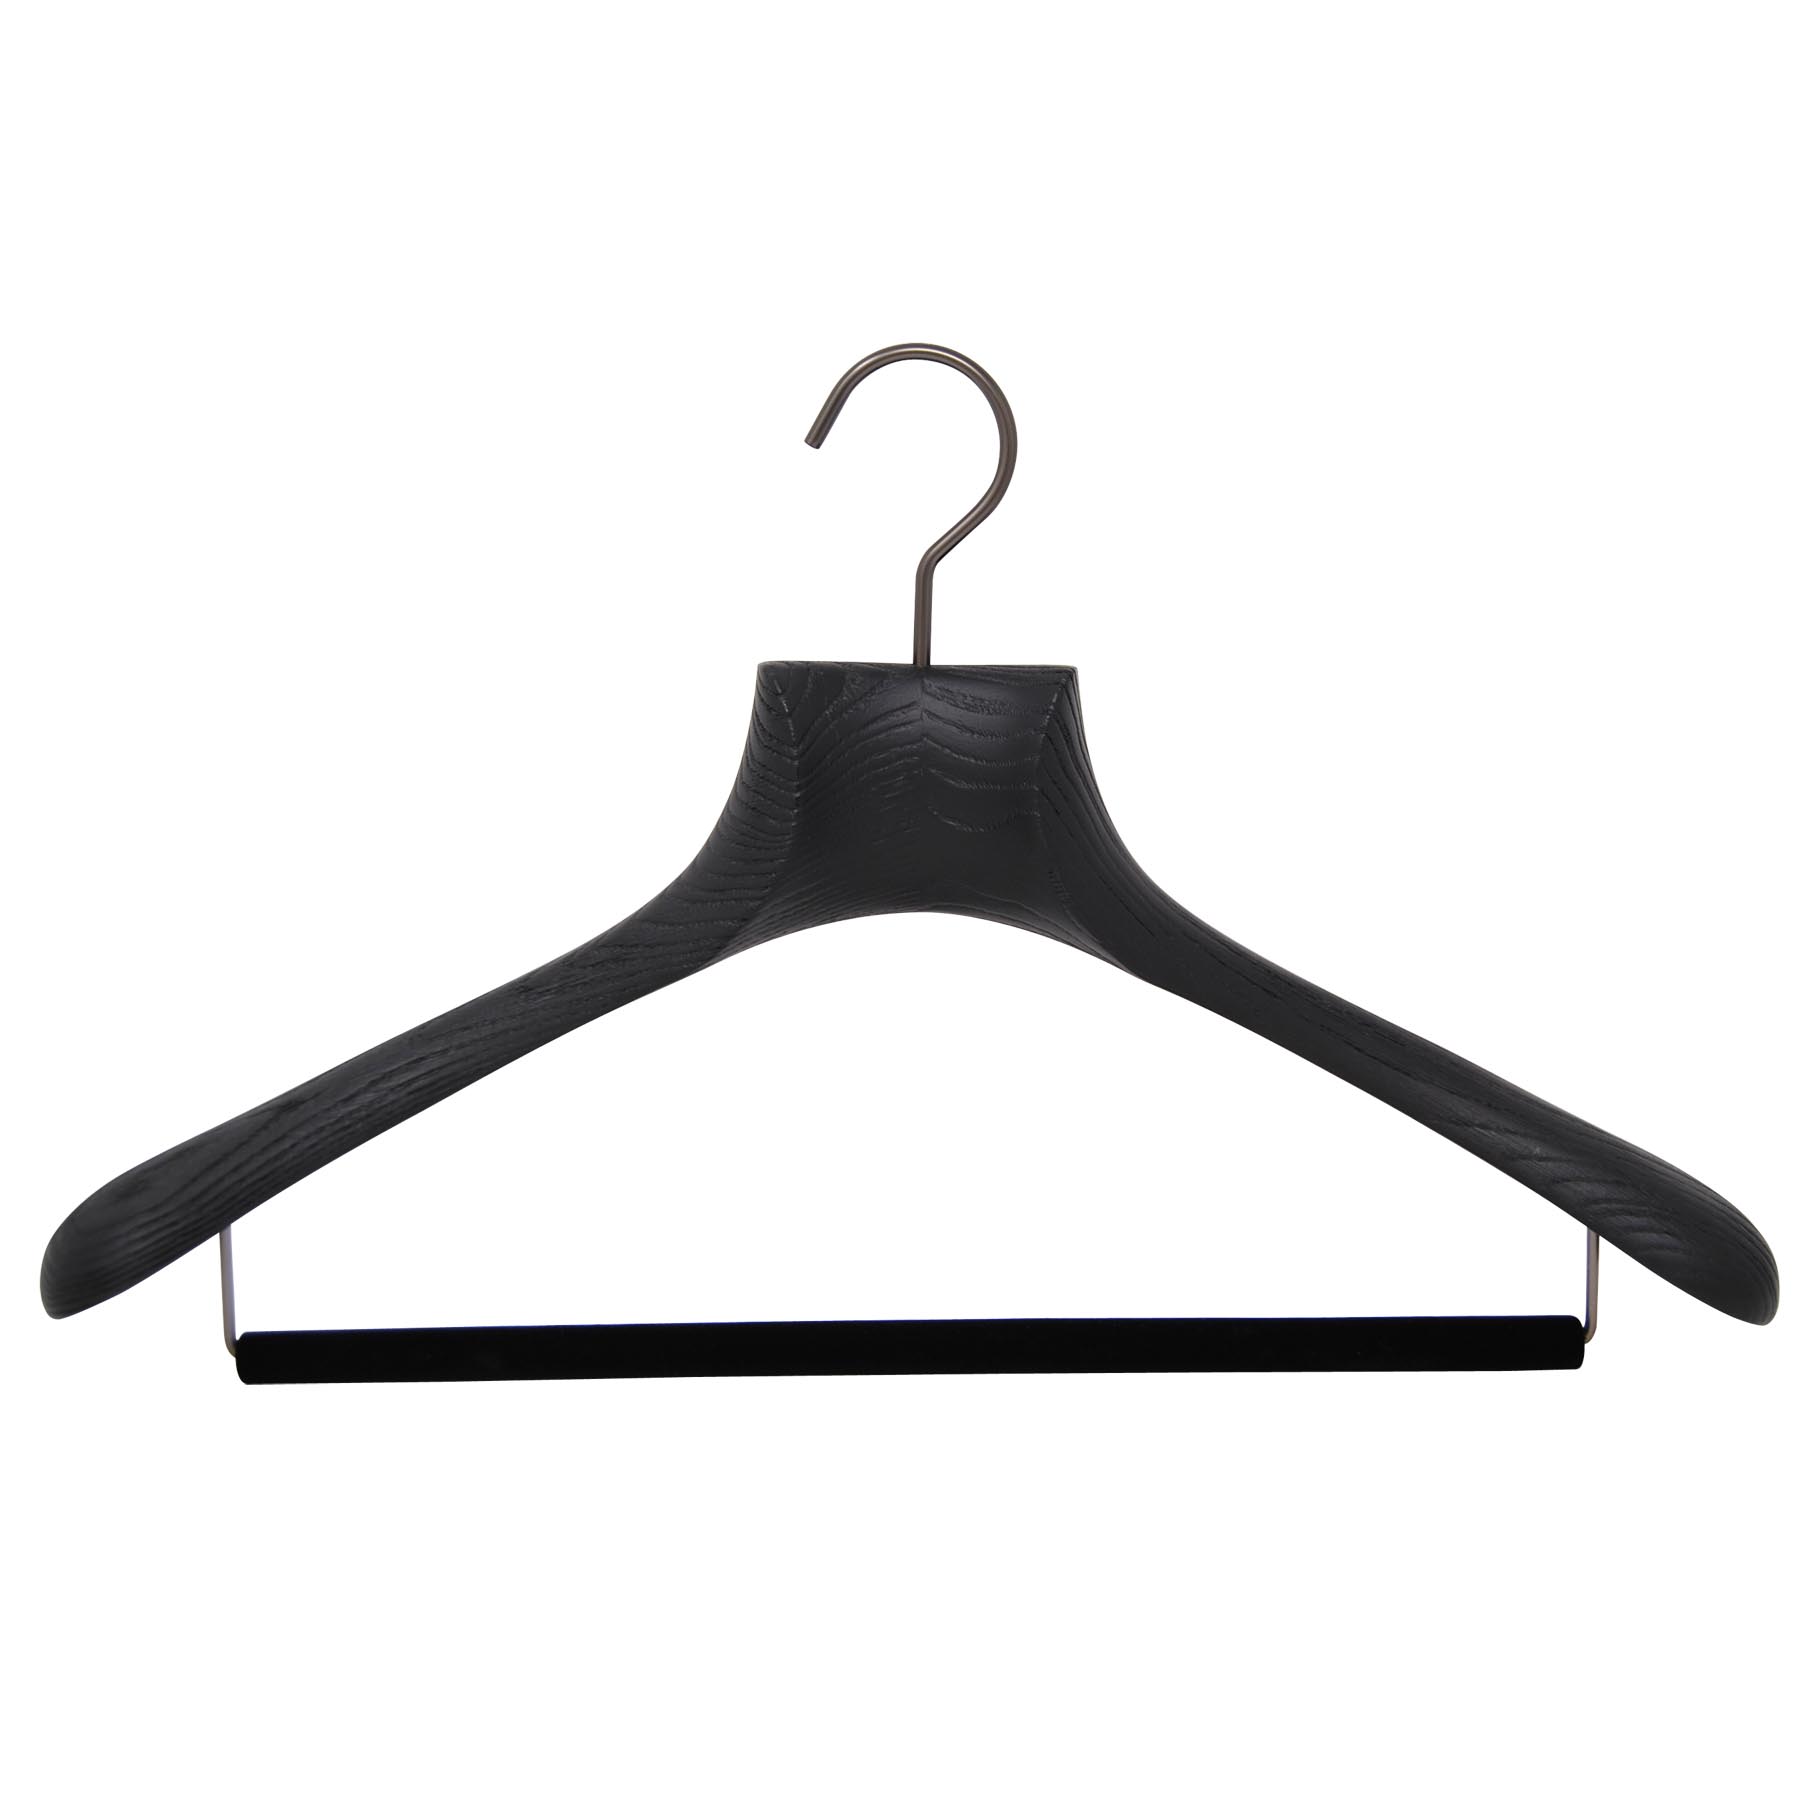 6 Kleiderbügel für Jacke und Anzug in Esche - schwarz, gebürstetes Holz (Breite 45 cm)